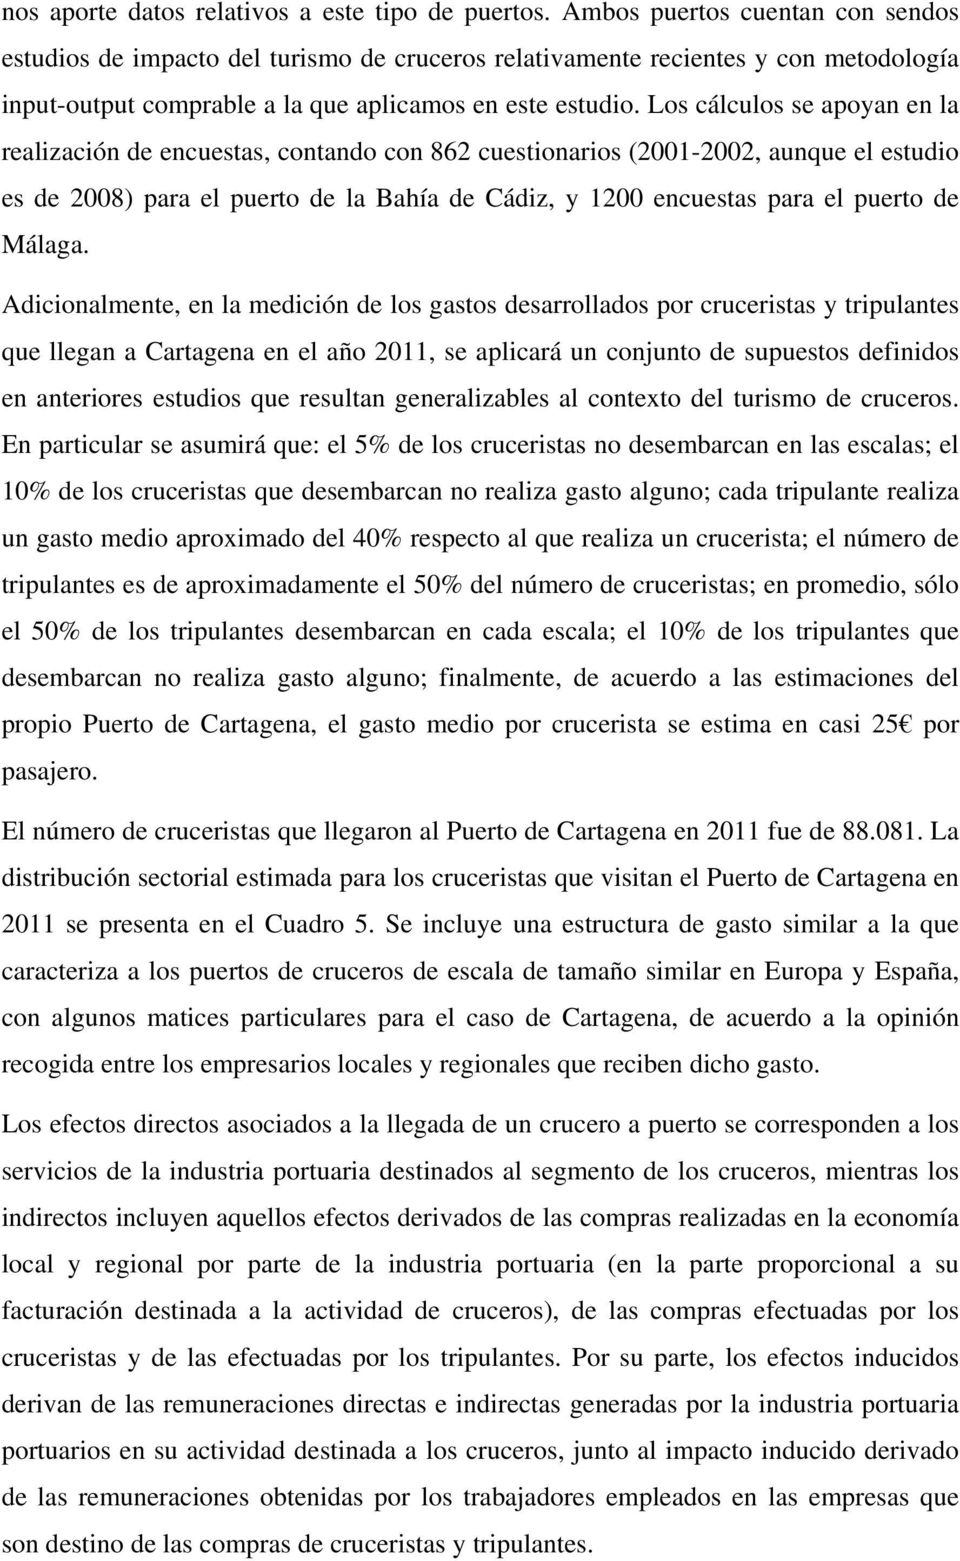 Los cálculos se apoyan en la realización de encuestas, contando con 862 cuestionarios (2001-2002, aunque el estudio es de 2008) para el puerto de la Bahía de Cádiz, y 1200 encuestas para el puerto de